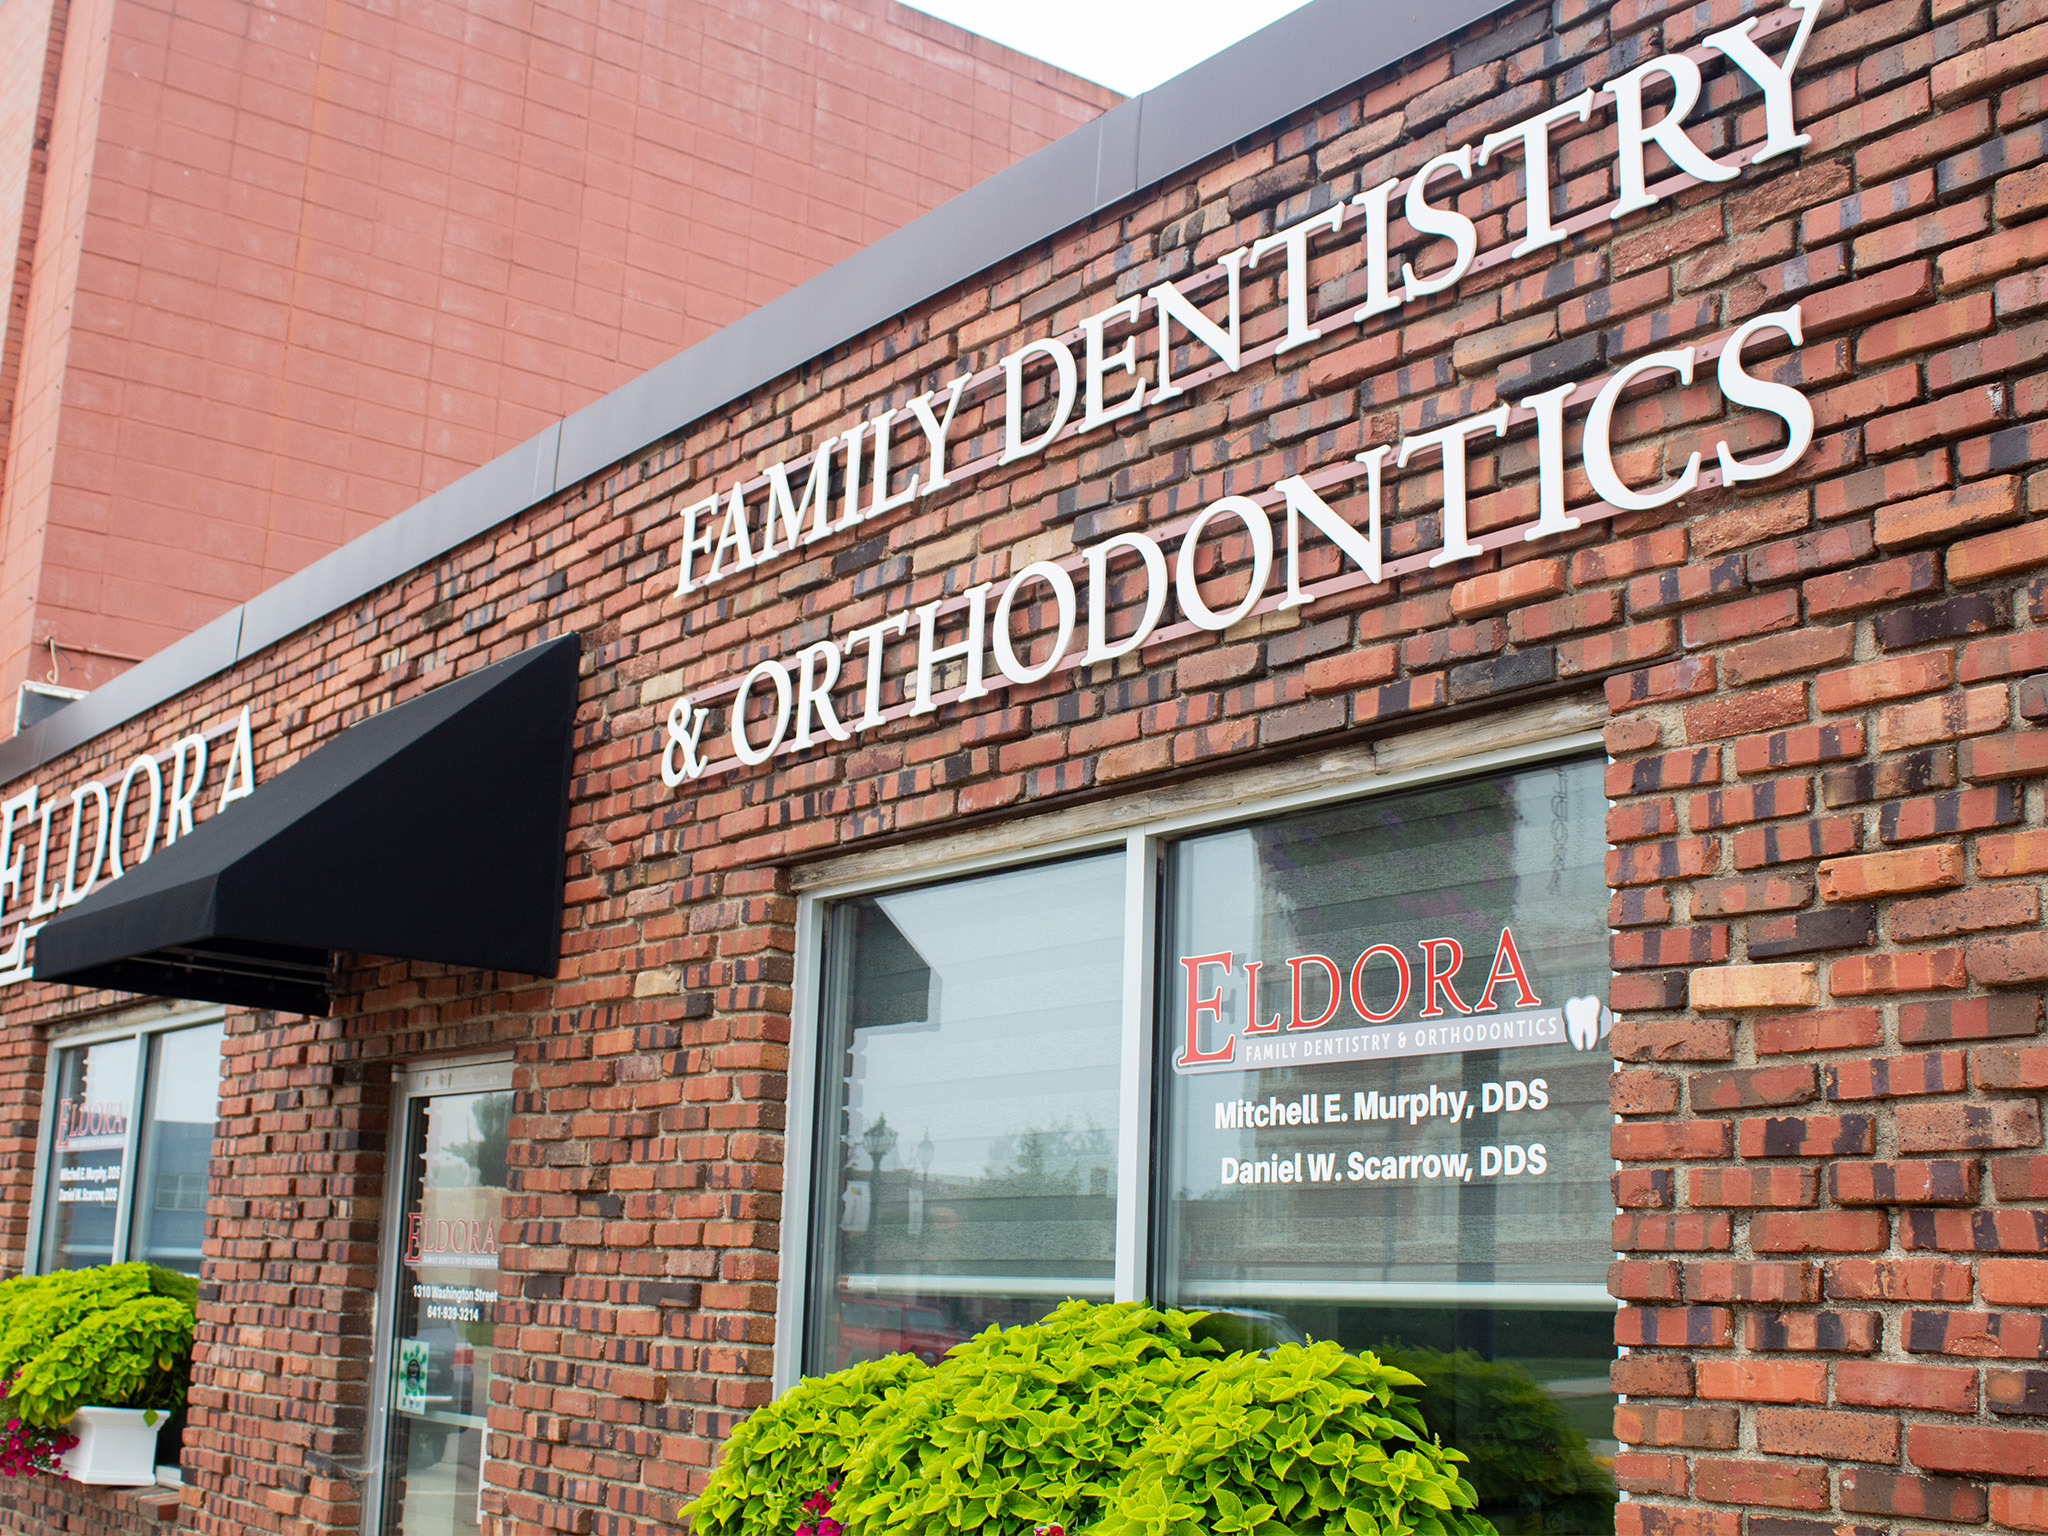 Eldora Dentist Office